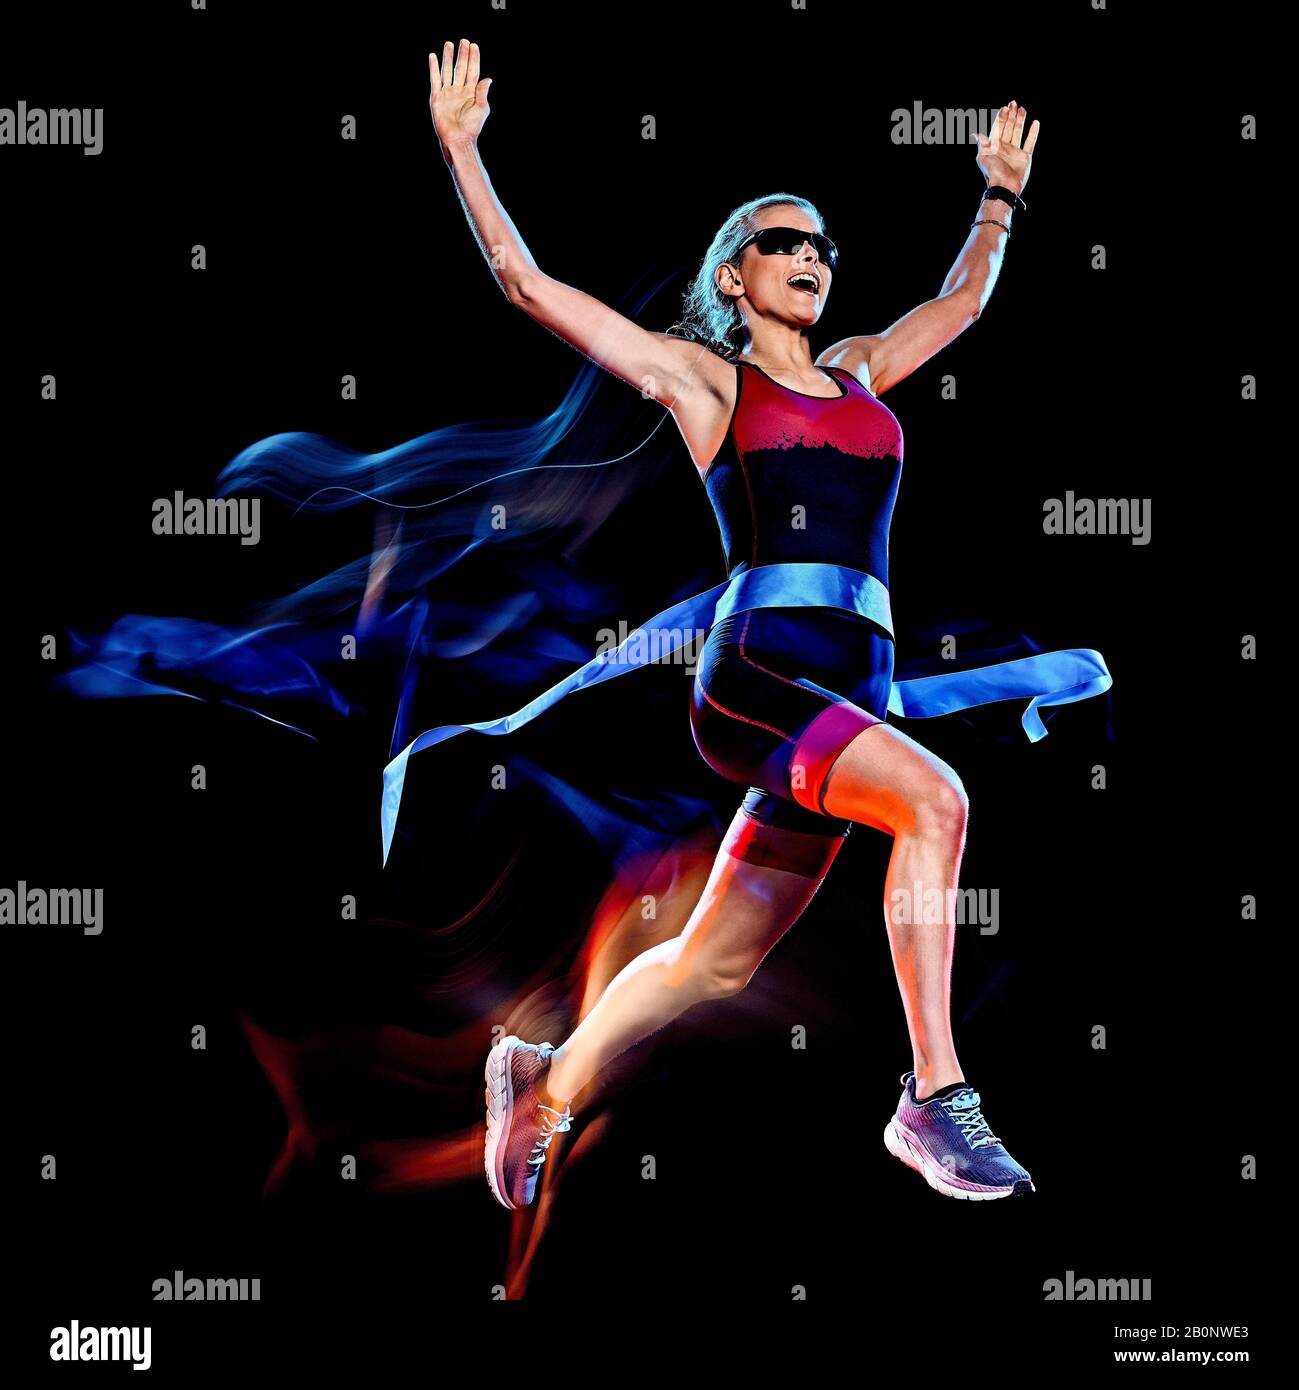 Una donna caucasica triathlon triatleta runner acceso joogger jogging studio shot isolato su sfondo nero con leggero effetto di pittura Foto Stock